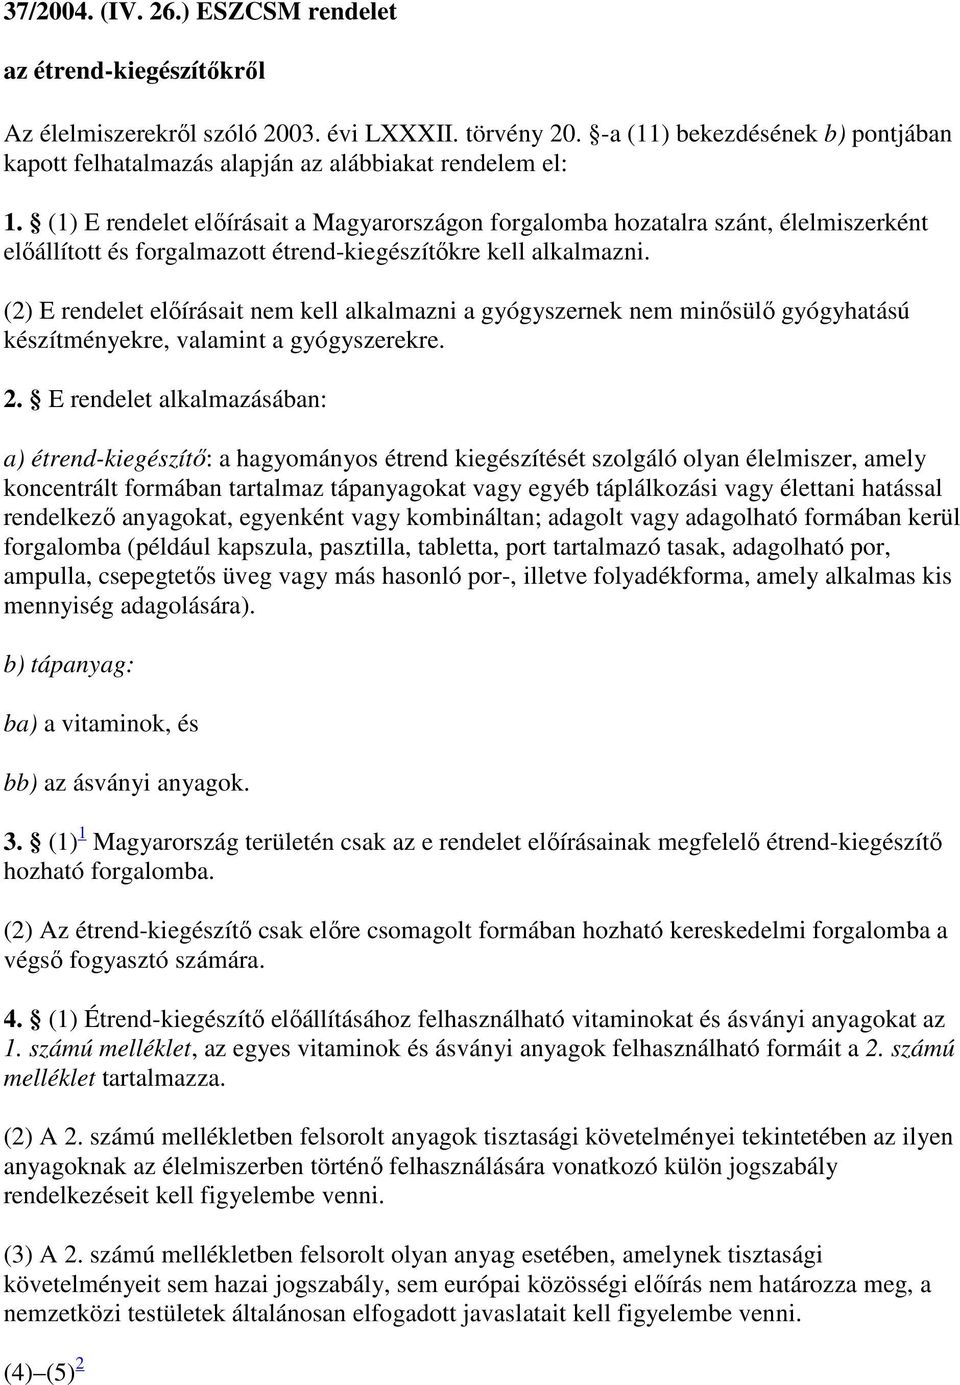 37/ (IV. ) ESzCsM rendelet az étrend-kiegészítőkről - Hatályos Jogszabályok Gyűjteménye